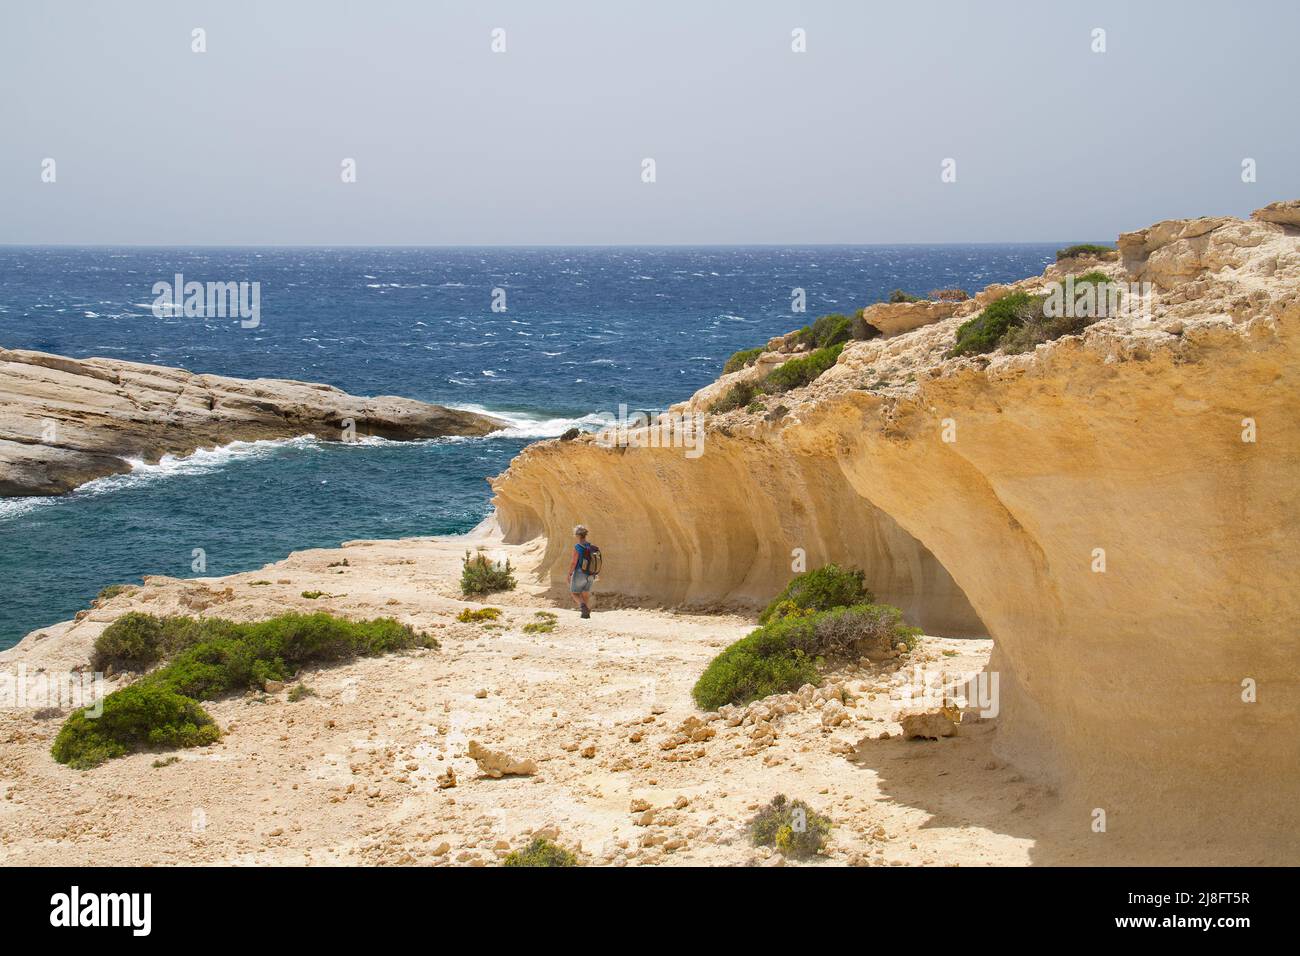 La muesca ondulada elevada en Creta, Grecia, muestra que la tierra se ha levantado o que el nivel del mar ha caído Foto de stock